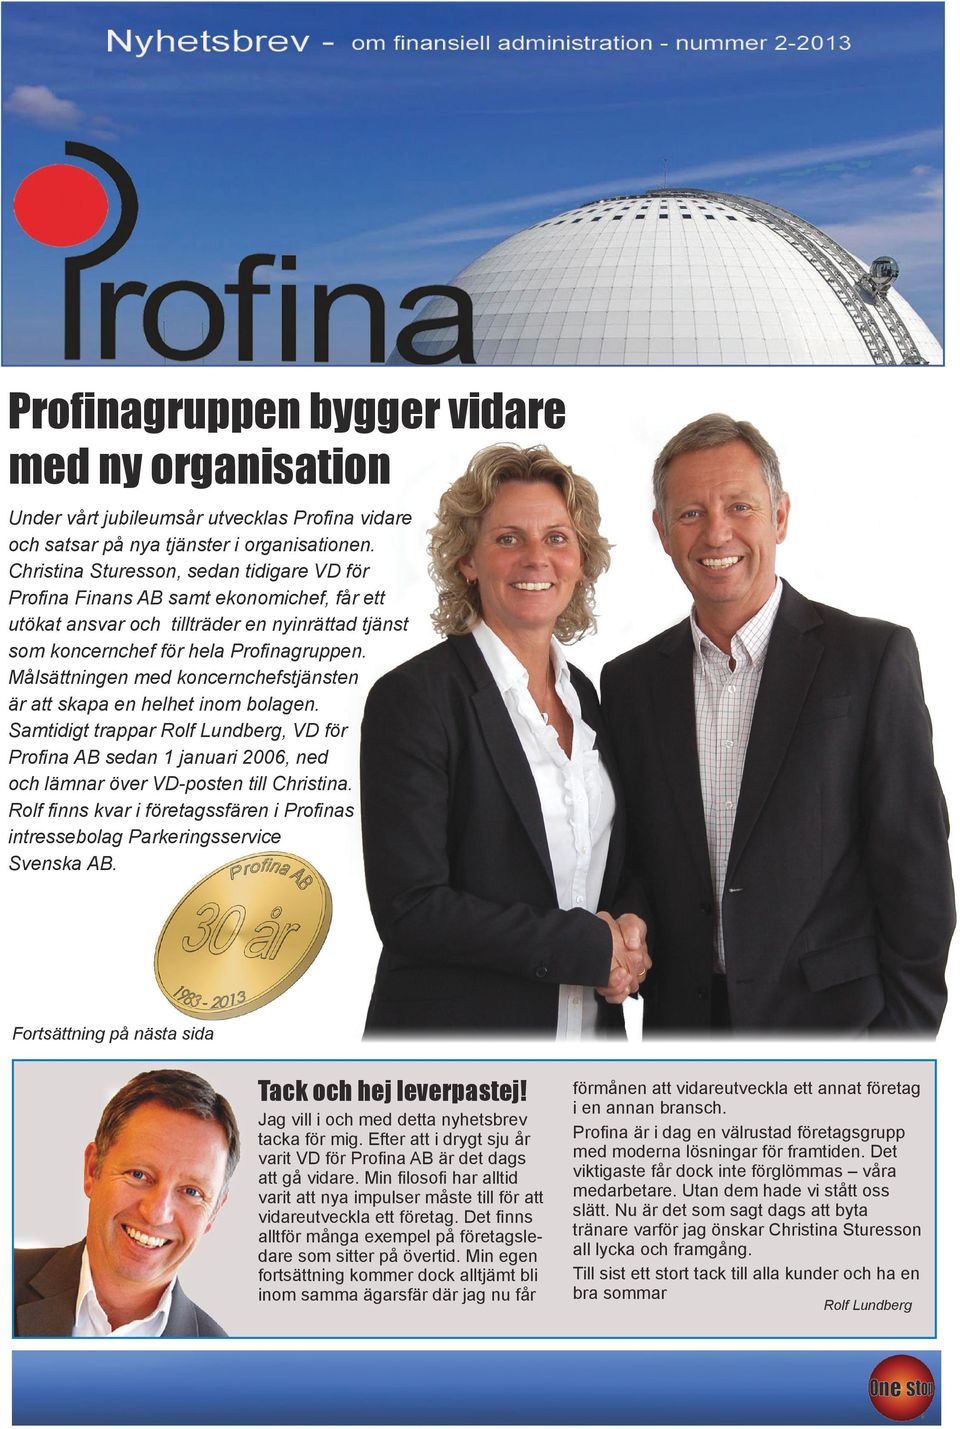 Målsättningen med koncernchefstjänsten är att skapa en helhet inom bolagen. Samtidigt trappar Rolf Lundberg, VD för Profina AB sedan 1 januari 2006, ned och lämnar över VD-posten till Christina.